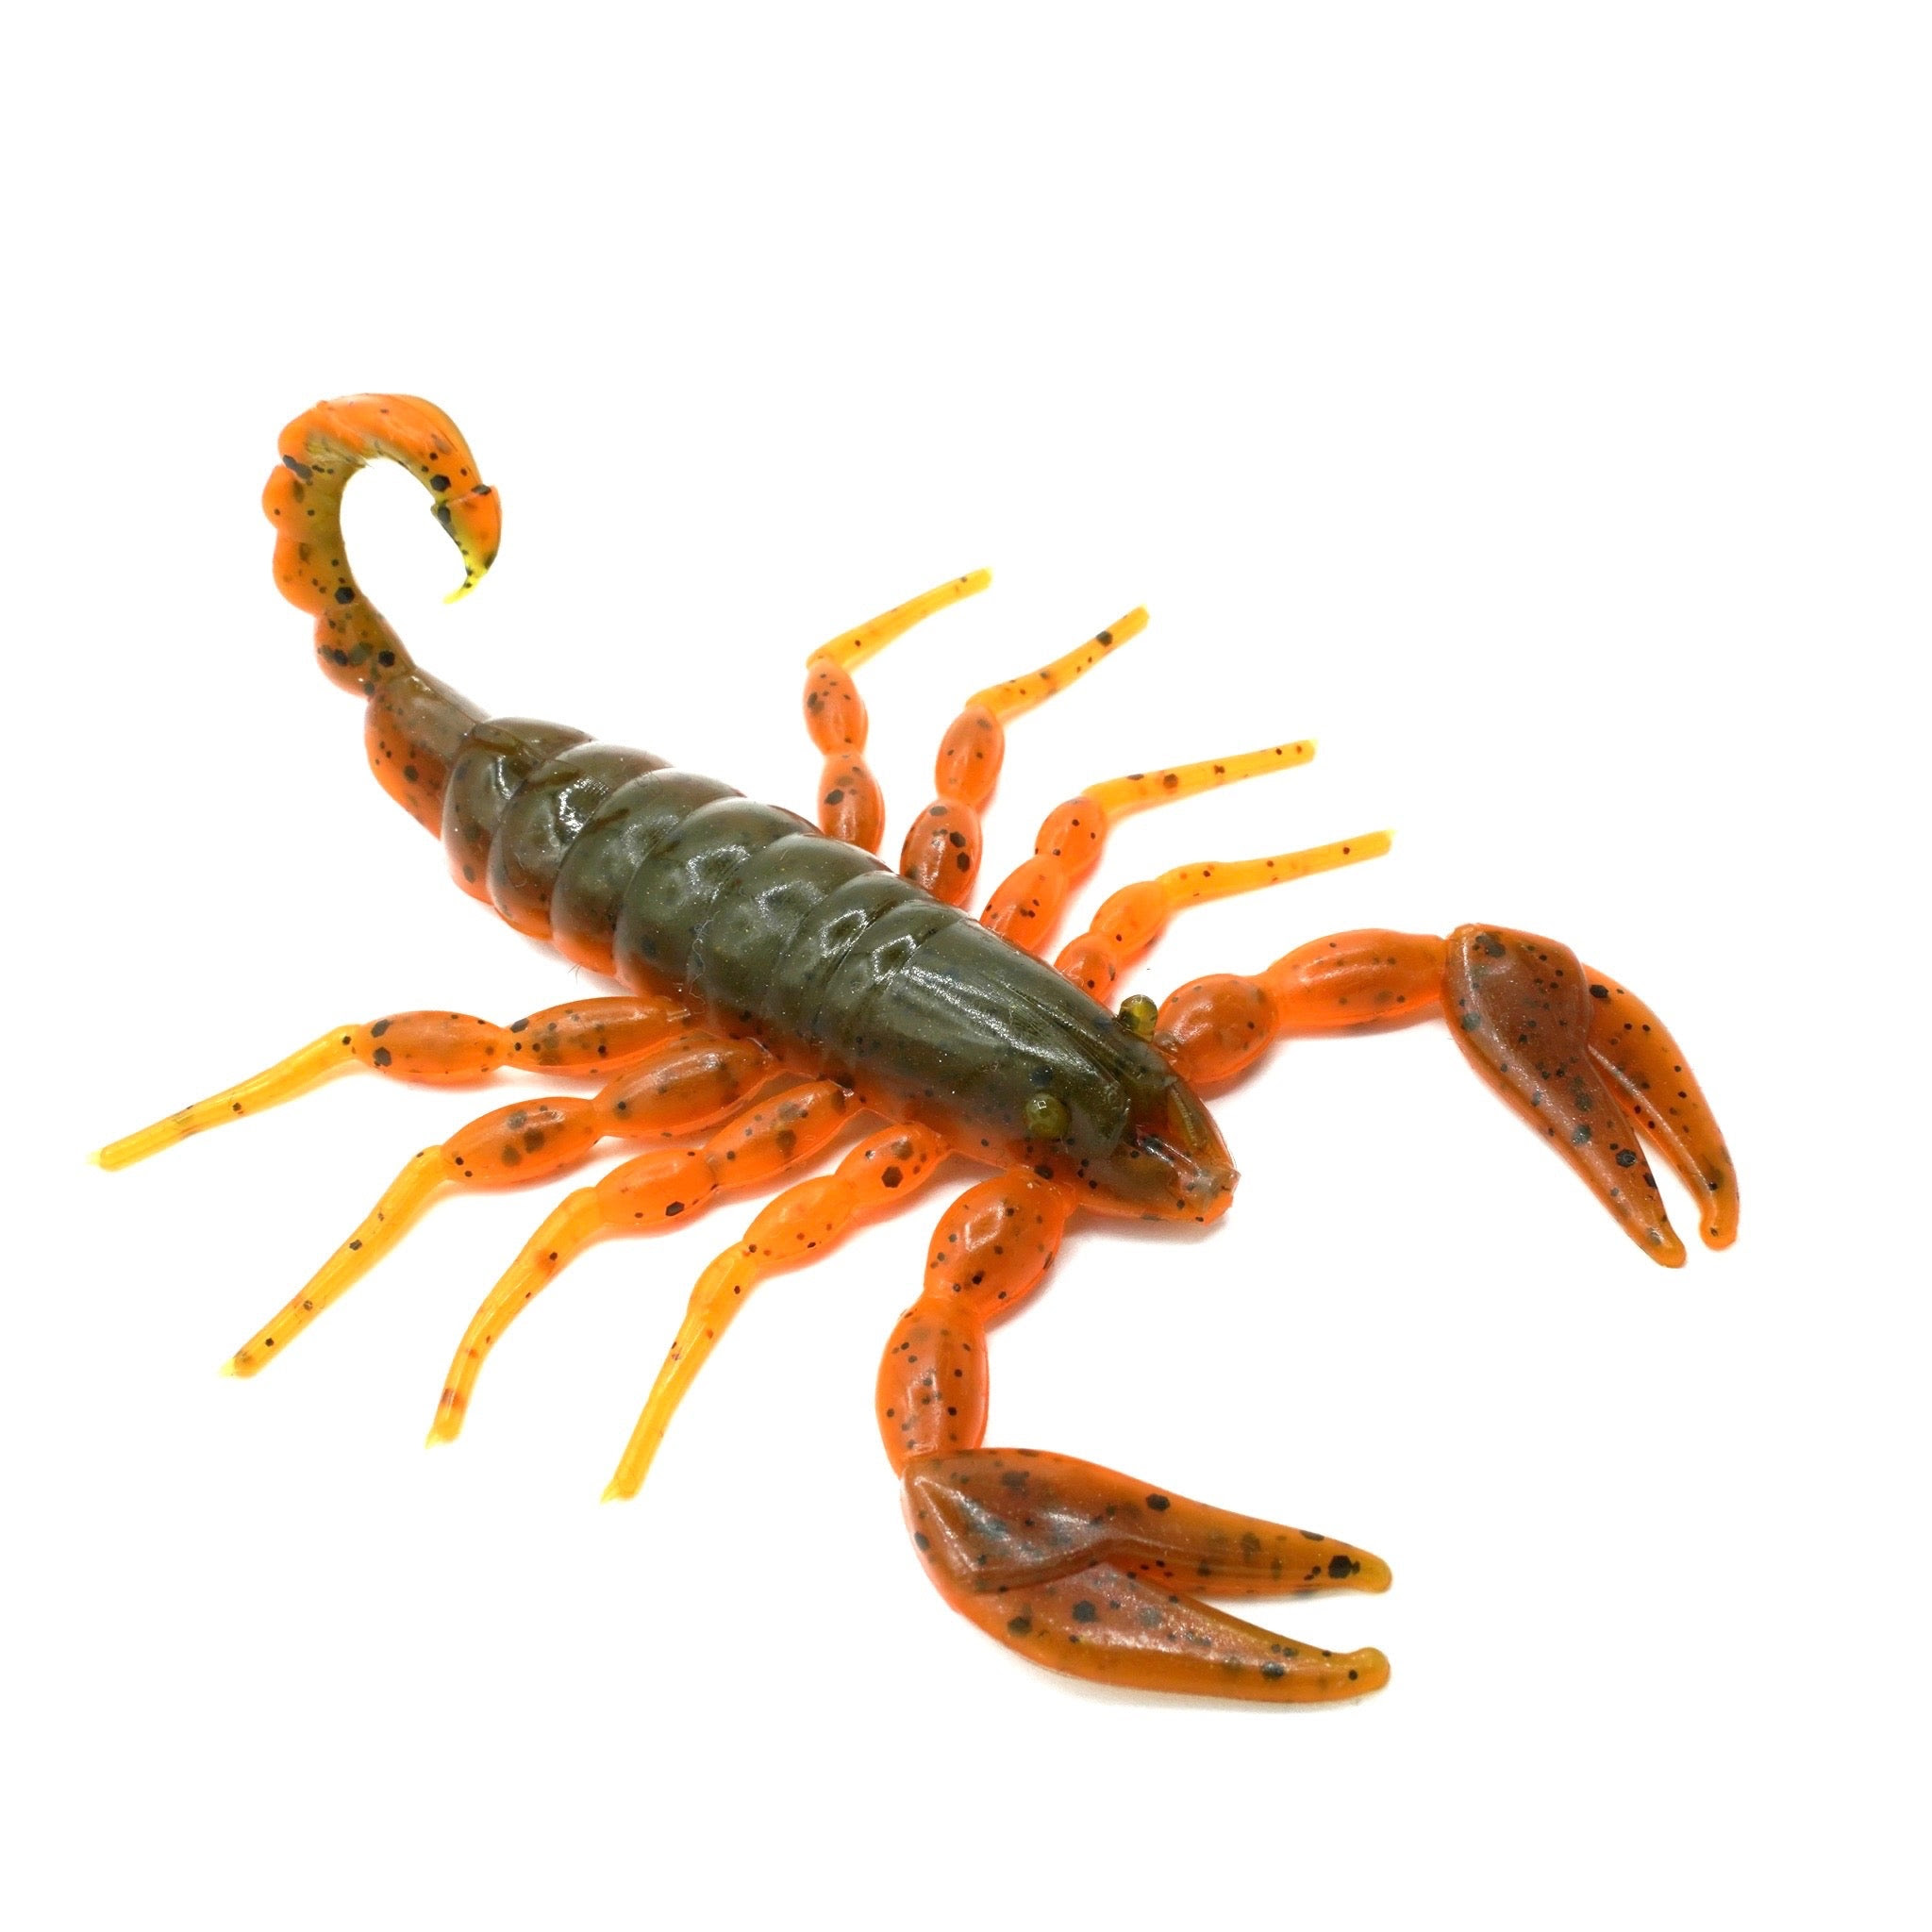 Image of FRESH Scorpion - ALABAMA